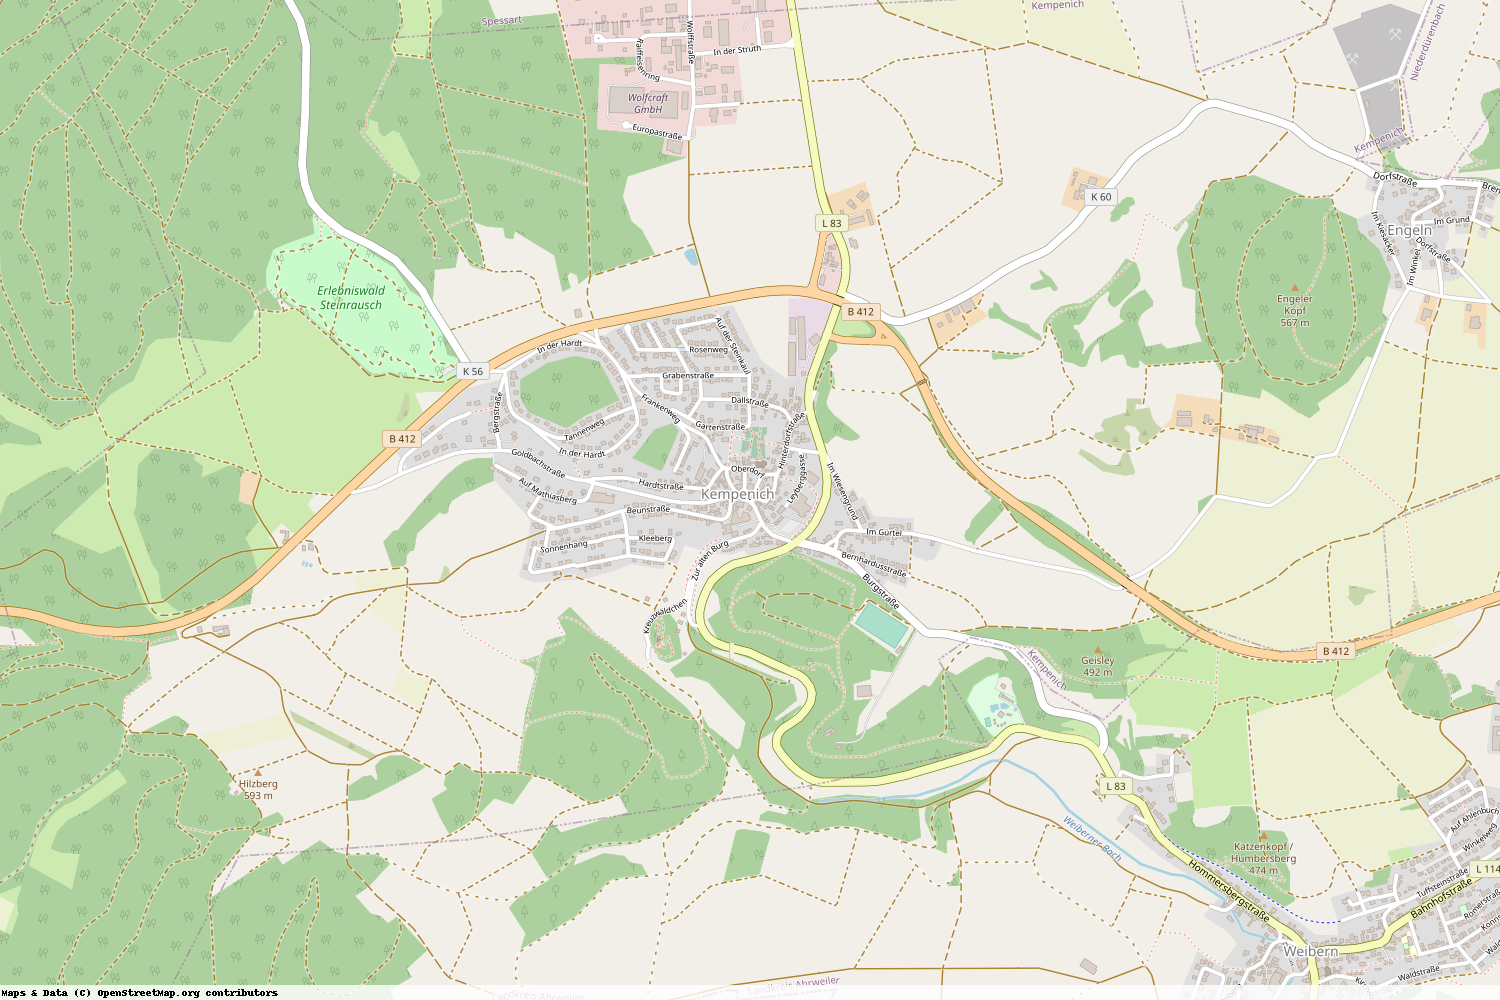 Ist gerade Stromausfall in Rheinland-Pfalz - Ahrweiler - Kempenich?